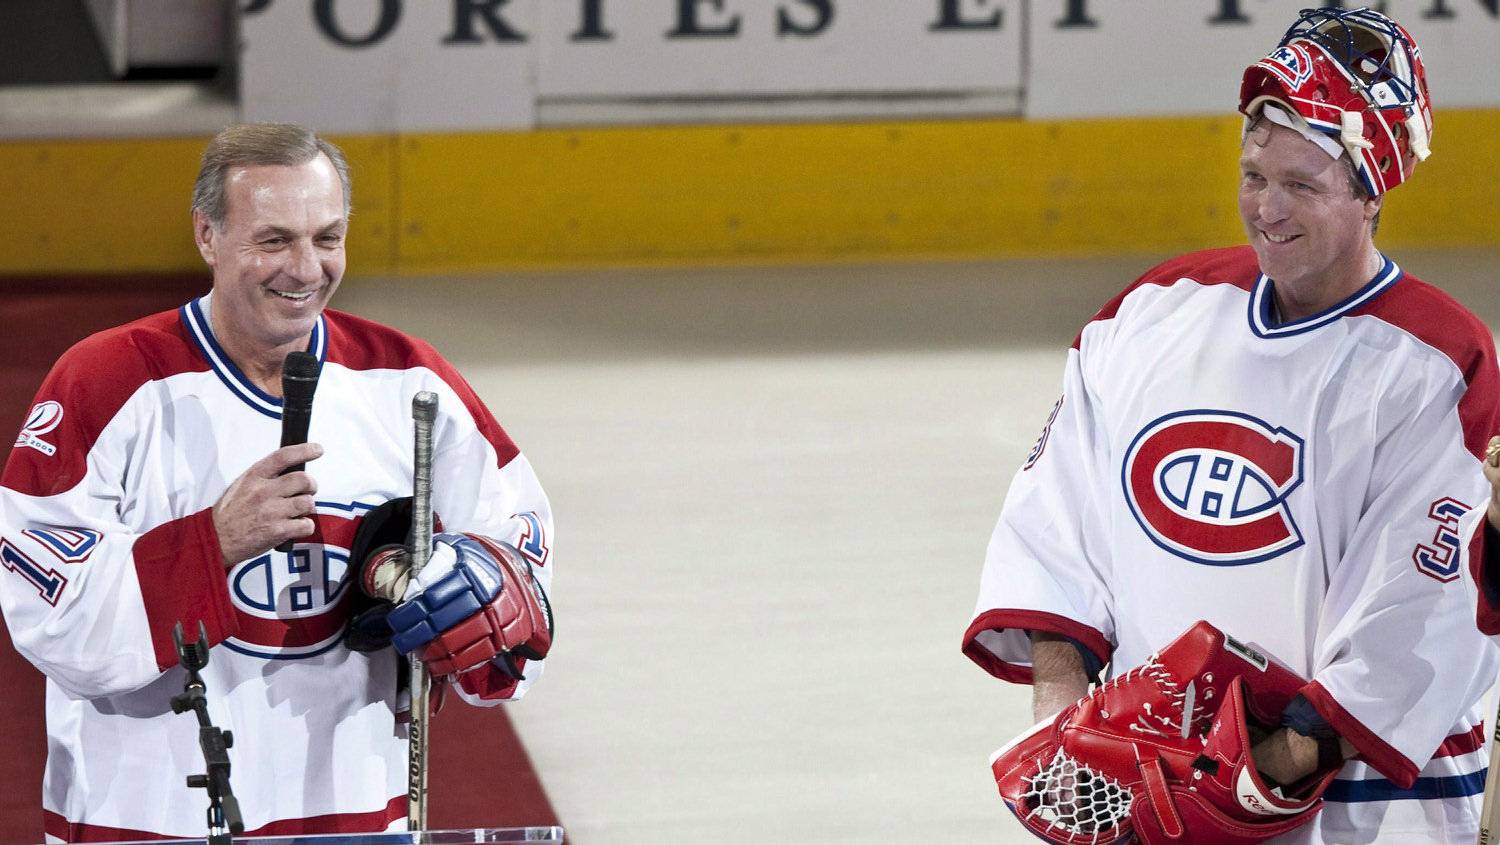 Canadiens, Jets legend Serge Savard talks Winnipeg and more in new  biography - Winnipeg